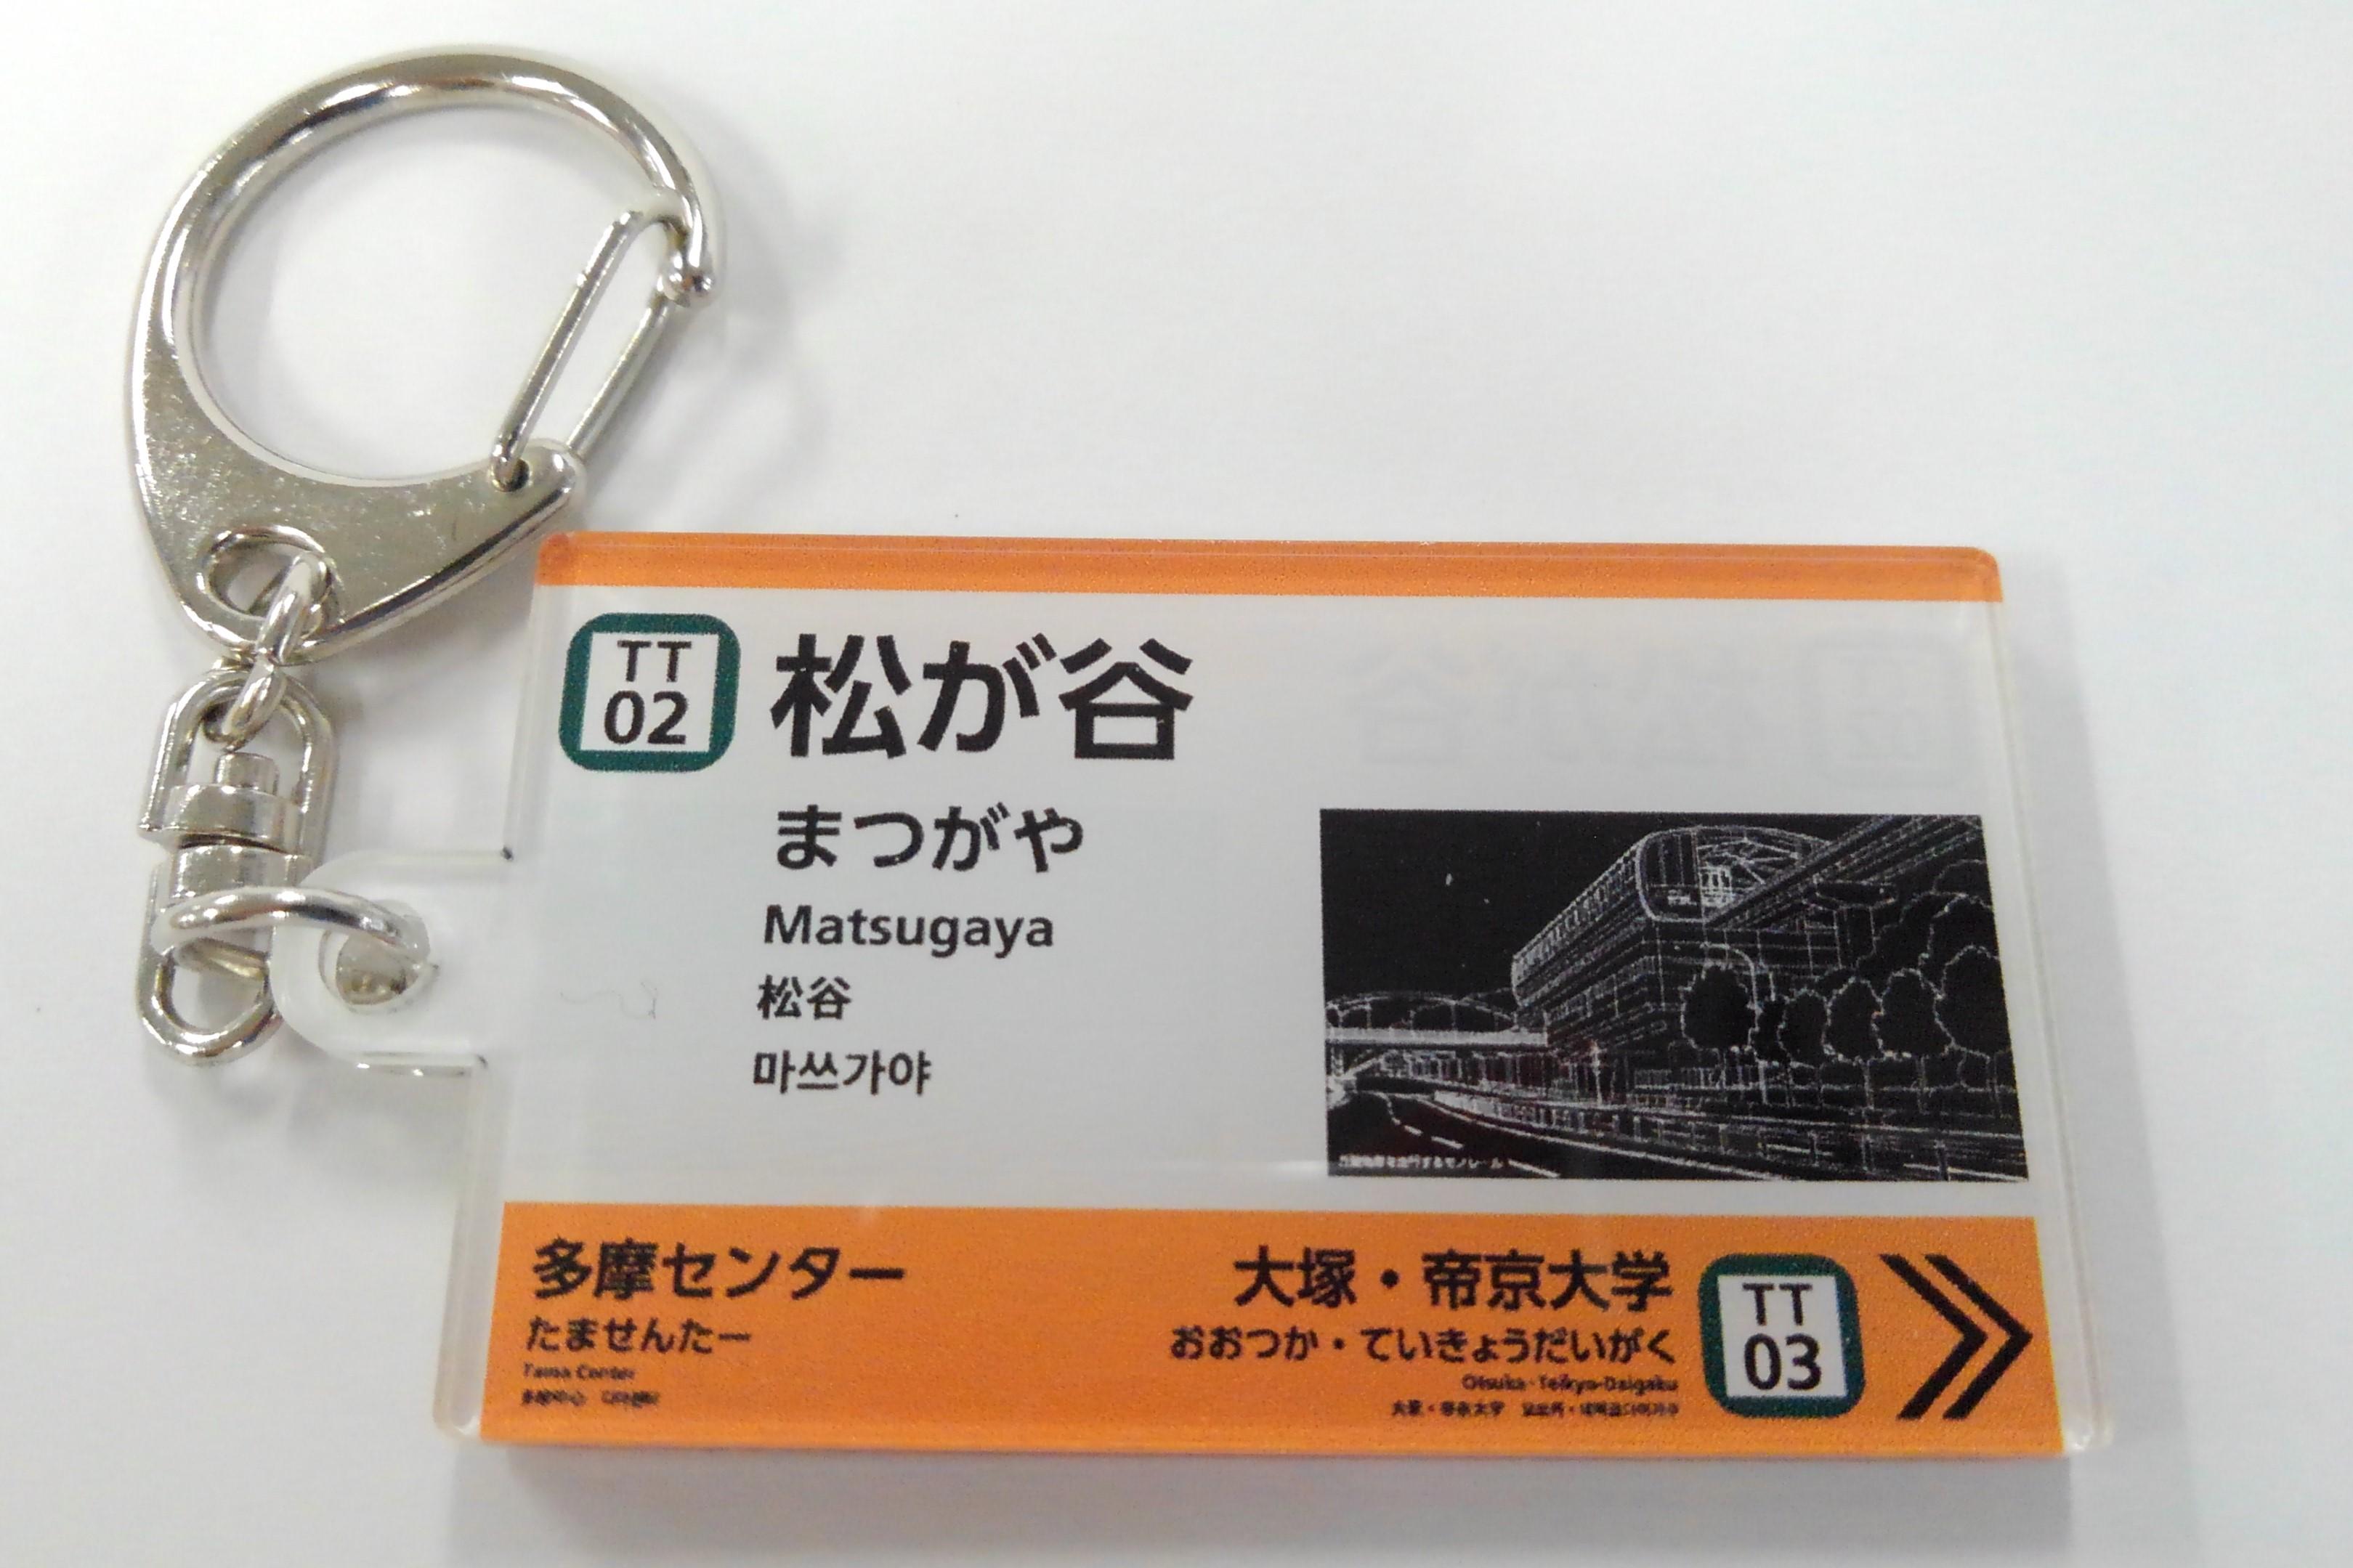 车站名标记钥匙圈[TT02]松谷站